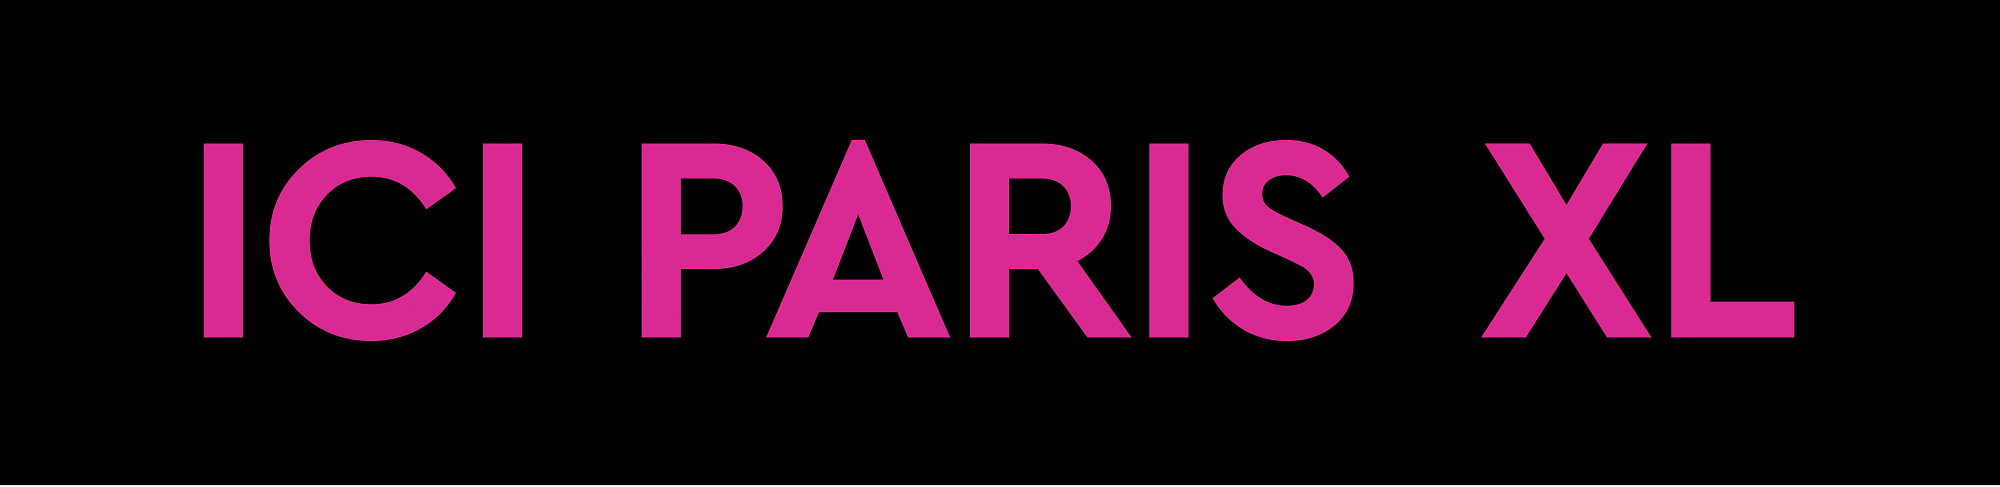 ICI PARIS XL Logo